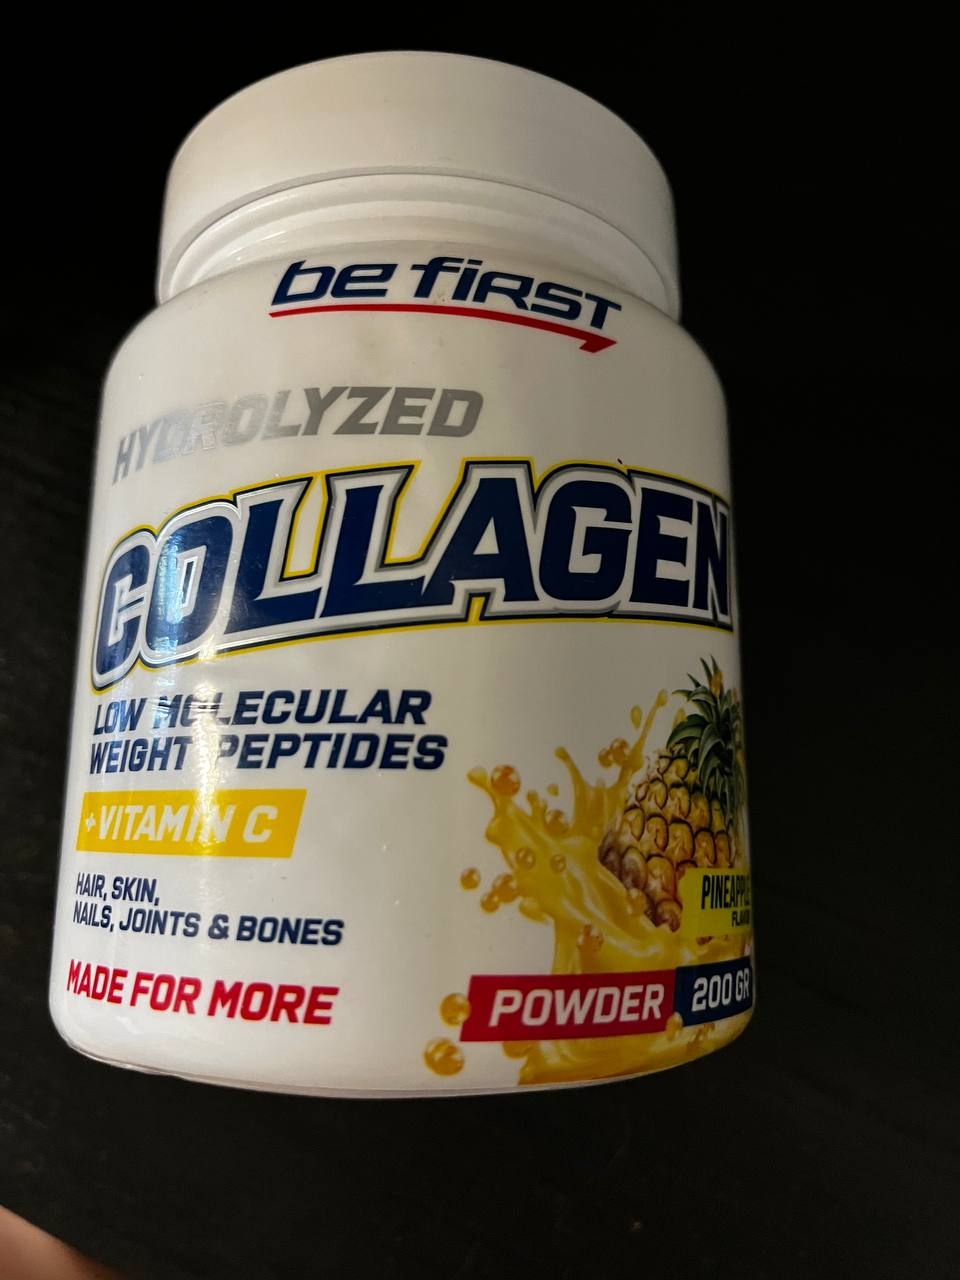 Be first First Collagen Powder - Отличный и вкусный коллаген